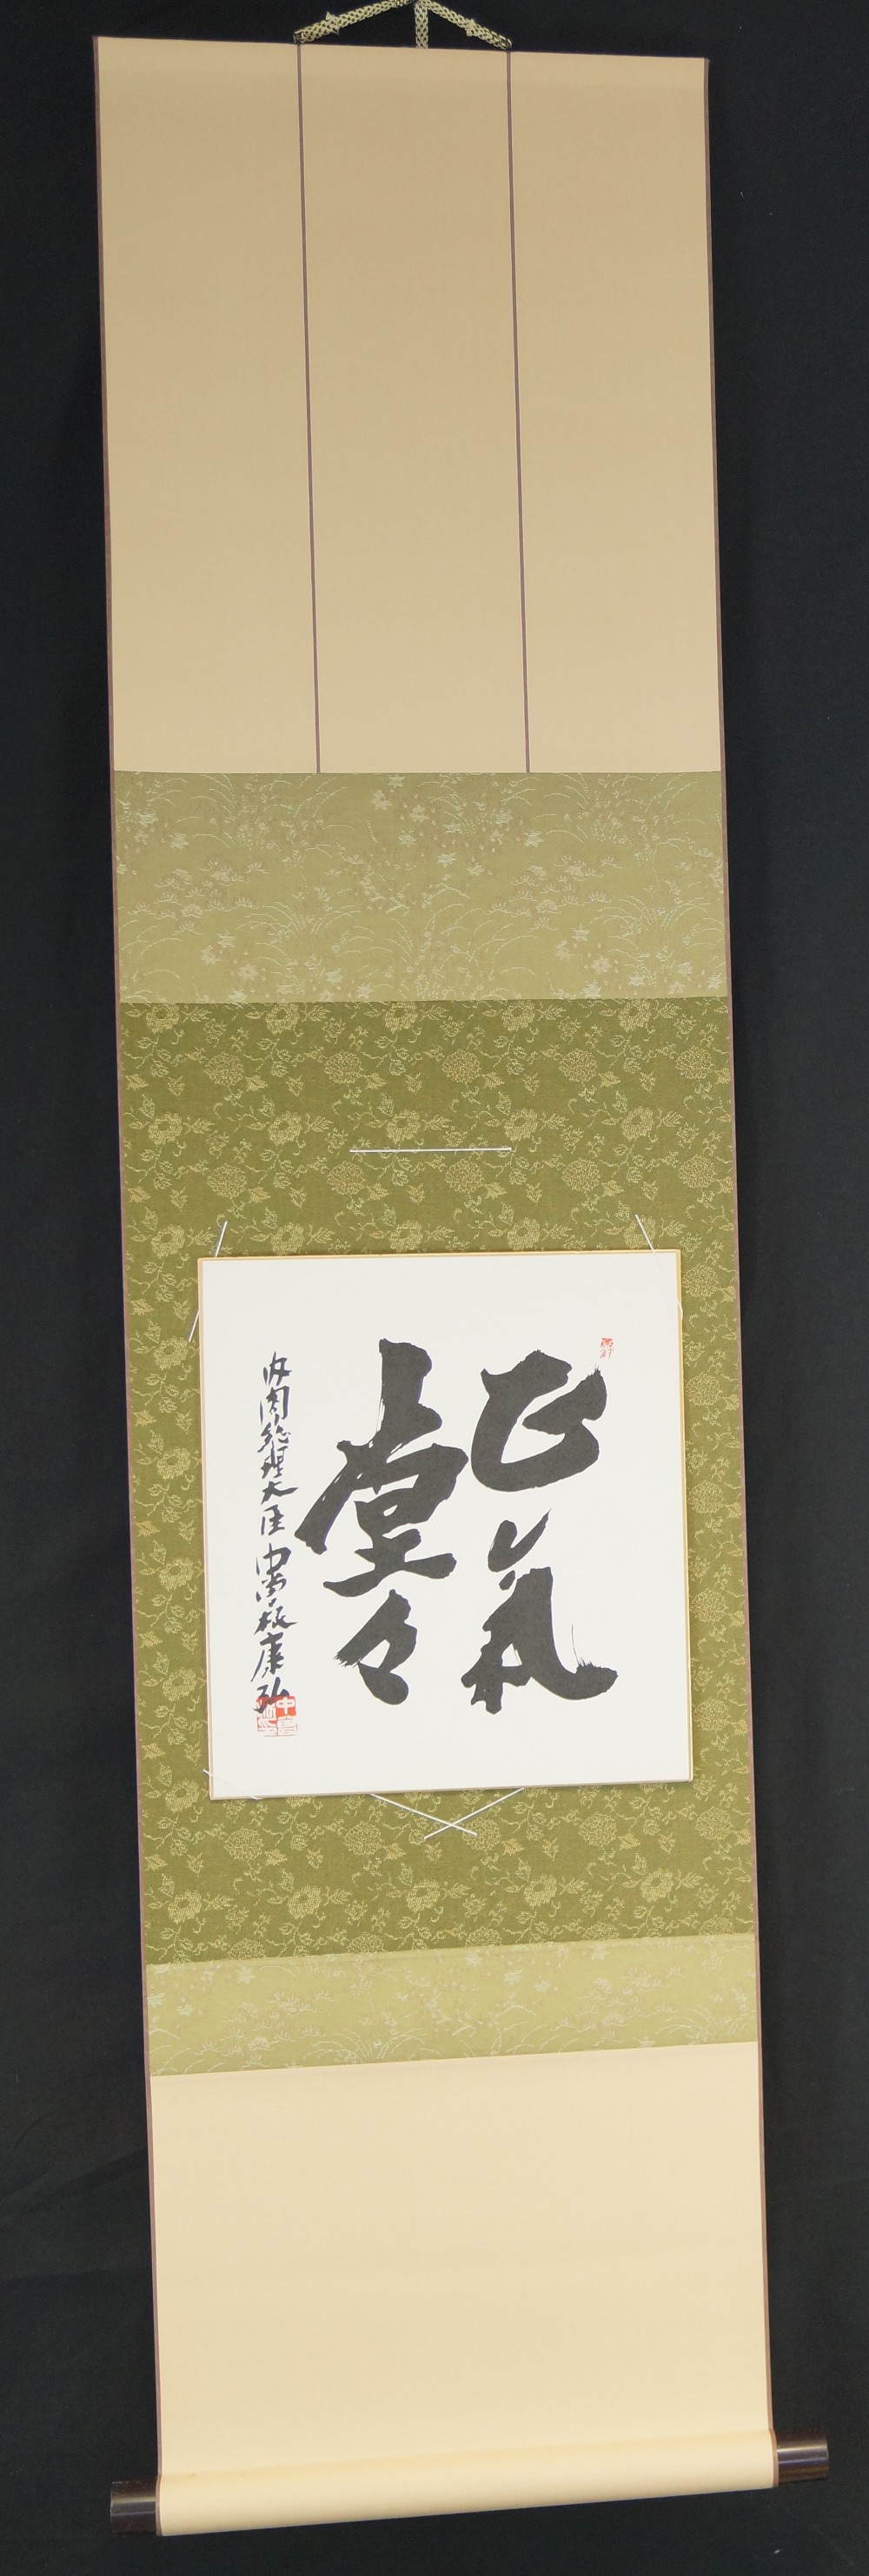 Shikishi - Kalligrafie "Der rechte Geist führt zu Nirvana"